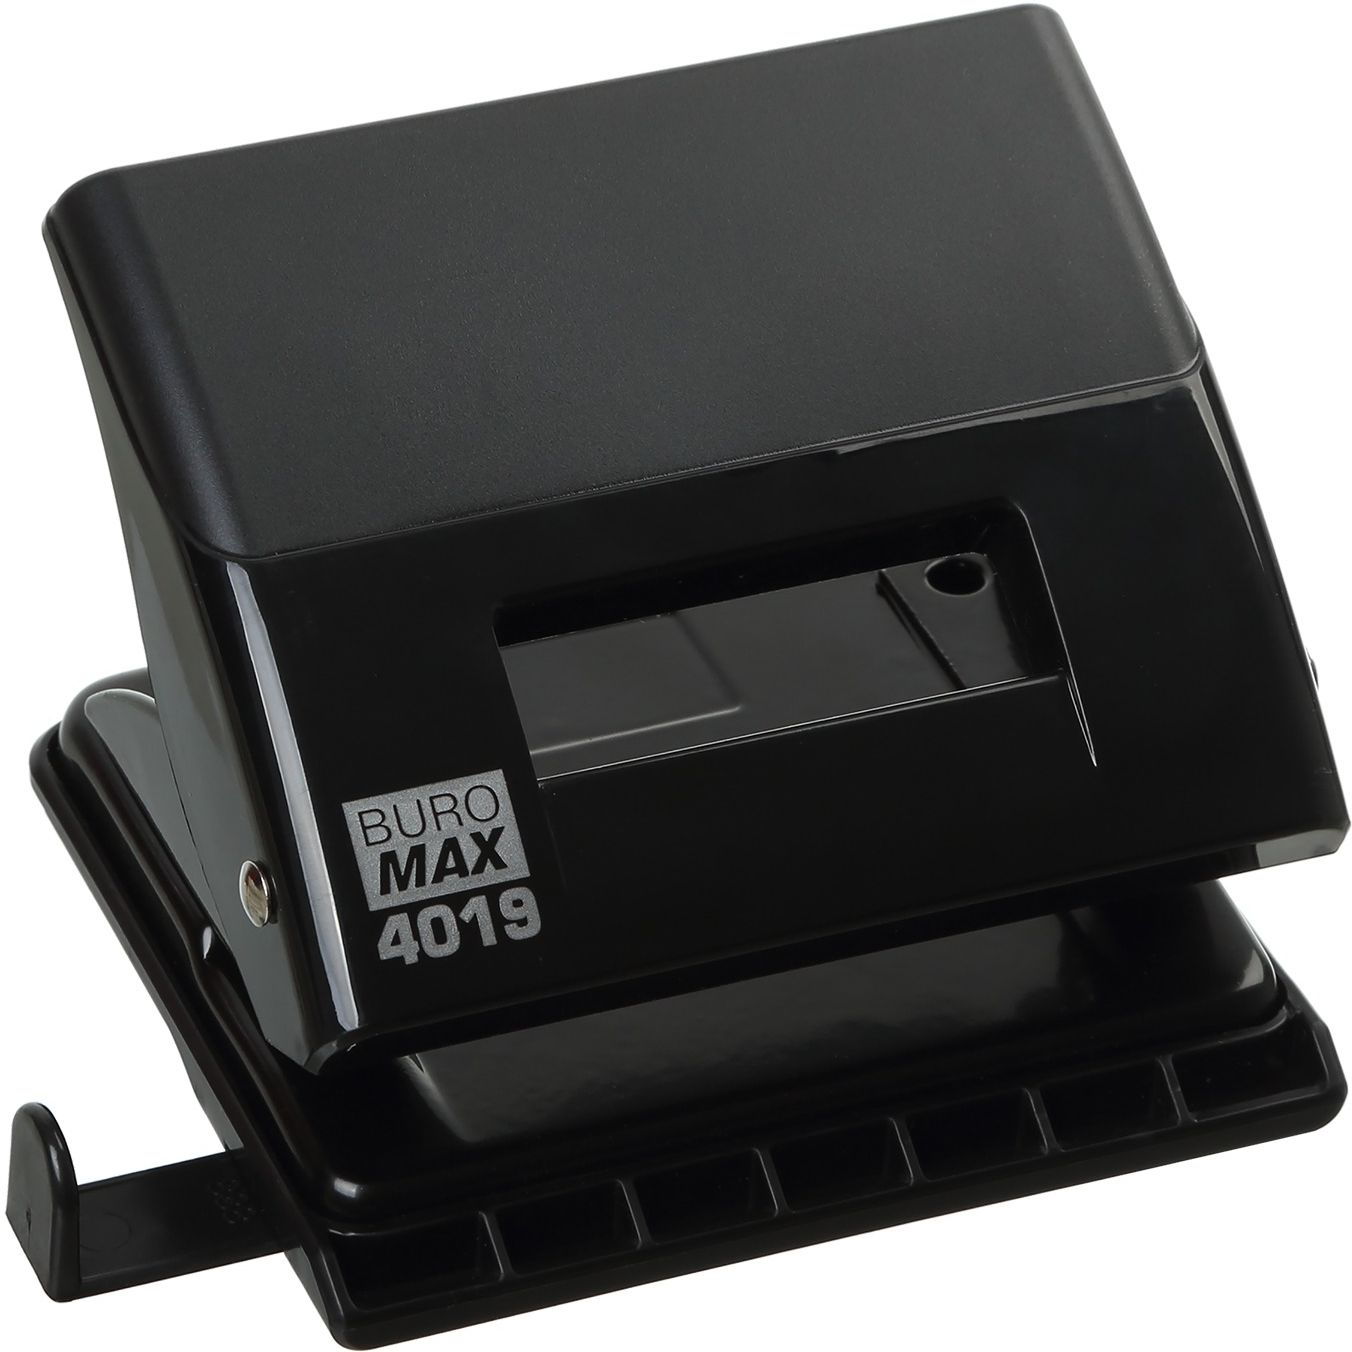 Діркопробивач Buromax Jobmax пластиковий до 20 аркушів чорний (BM.4019-01) - фото 1